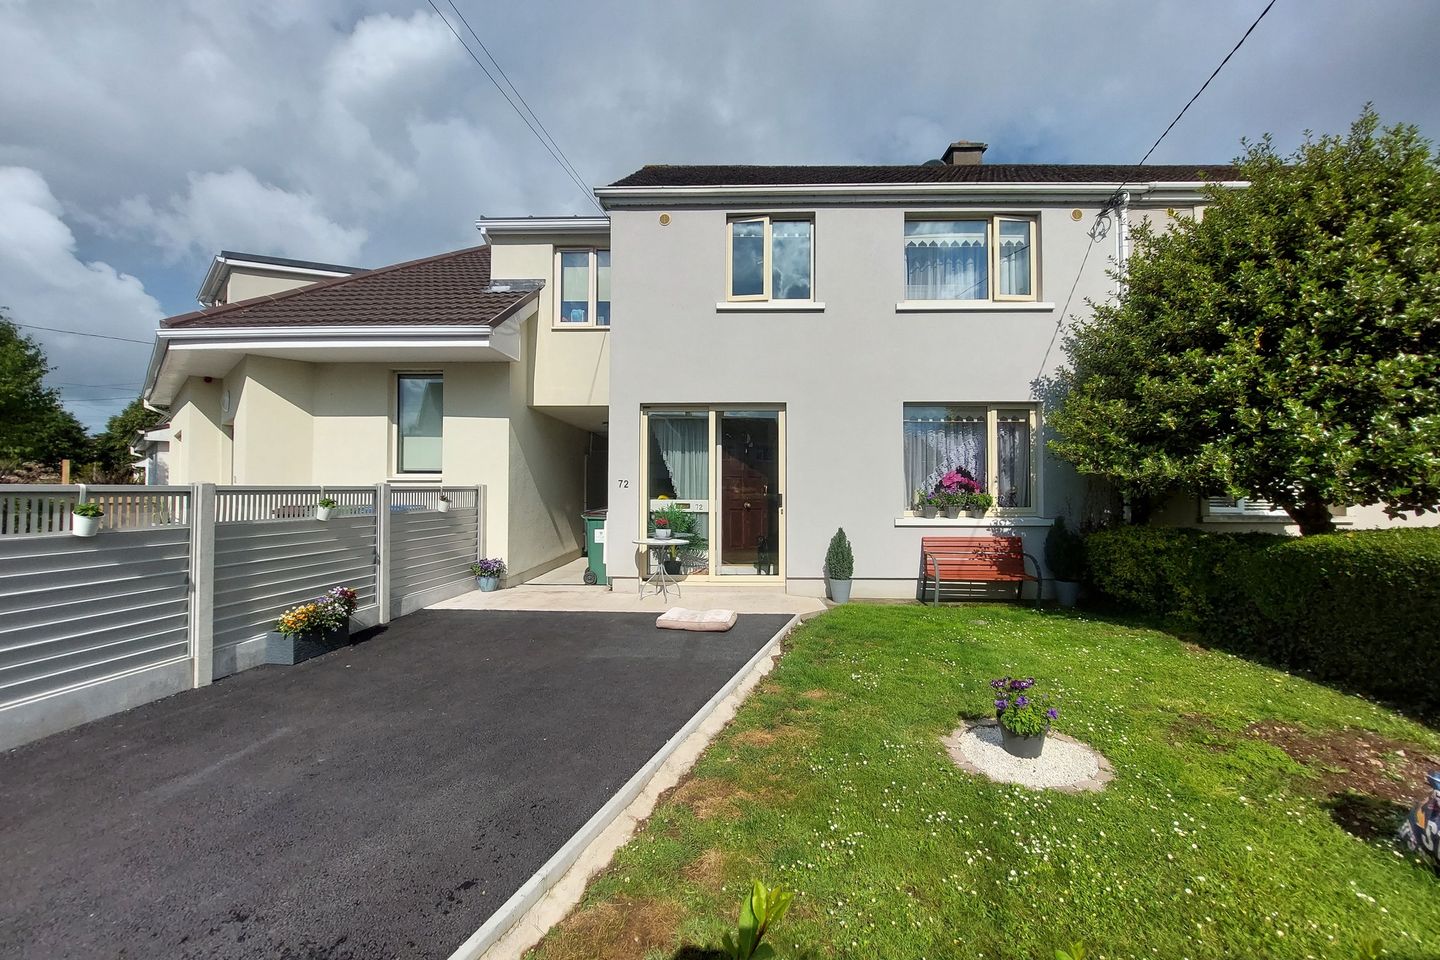 72 Ballykeeffe Estate, Dooradoyle, Dooradoyle, Co. Limerick, V94X9NP